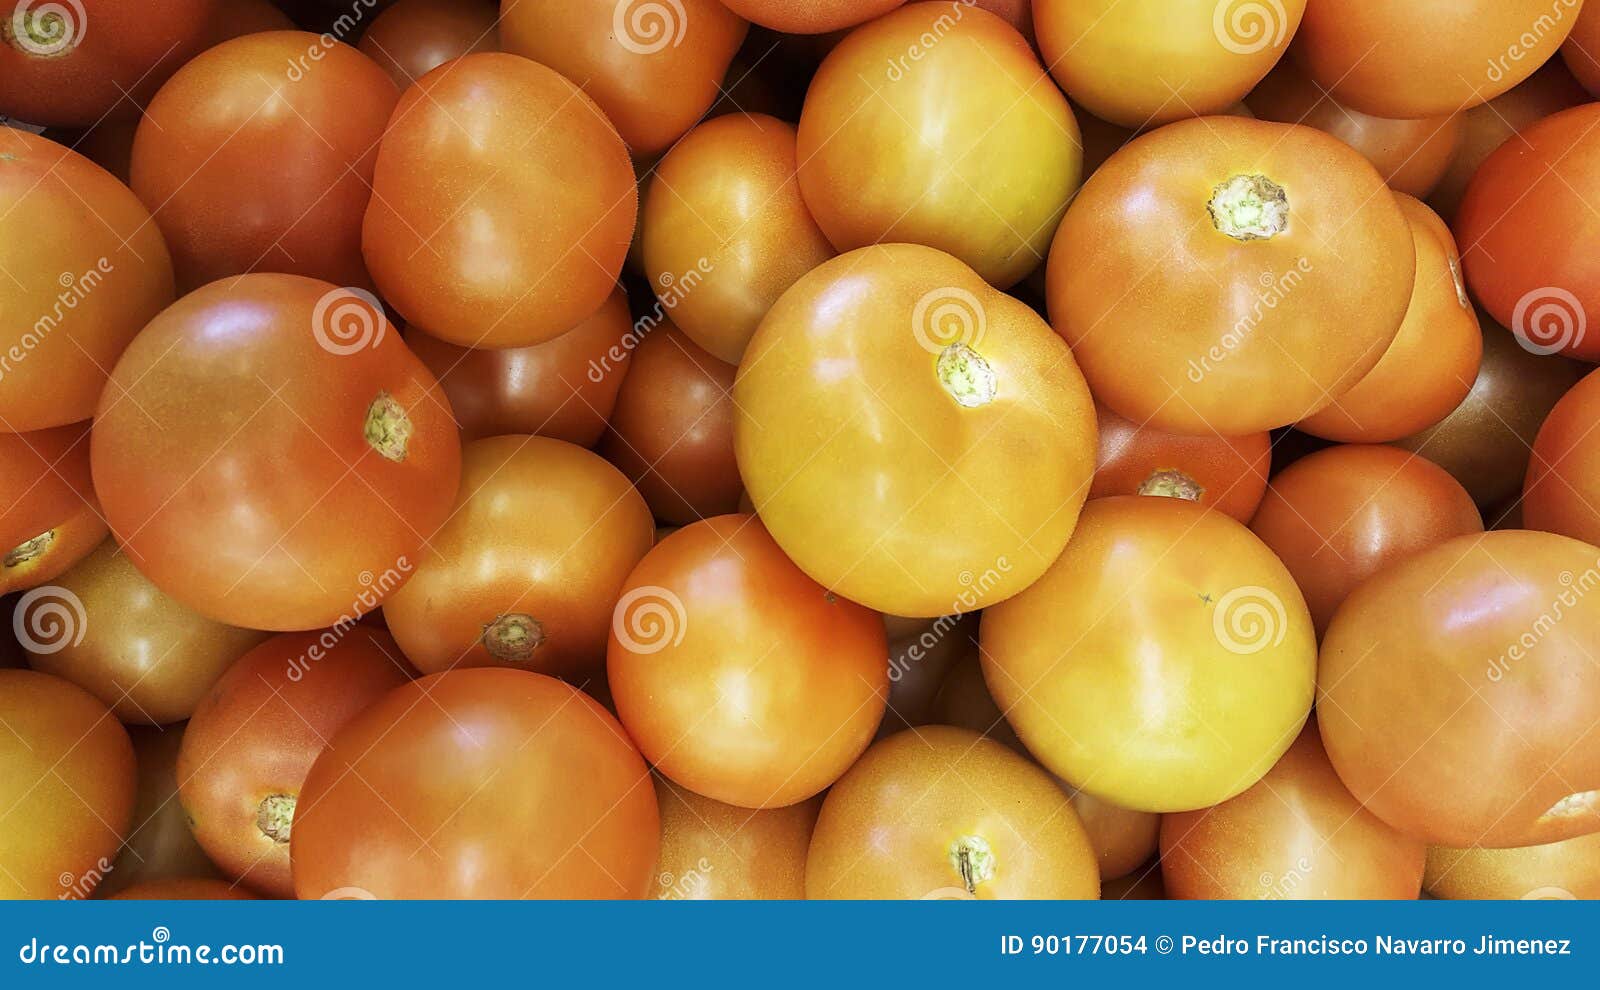 natural tomatoes tomates naturales